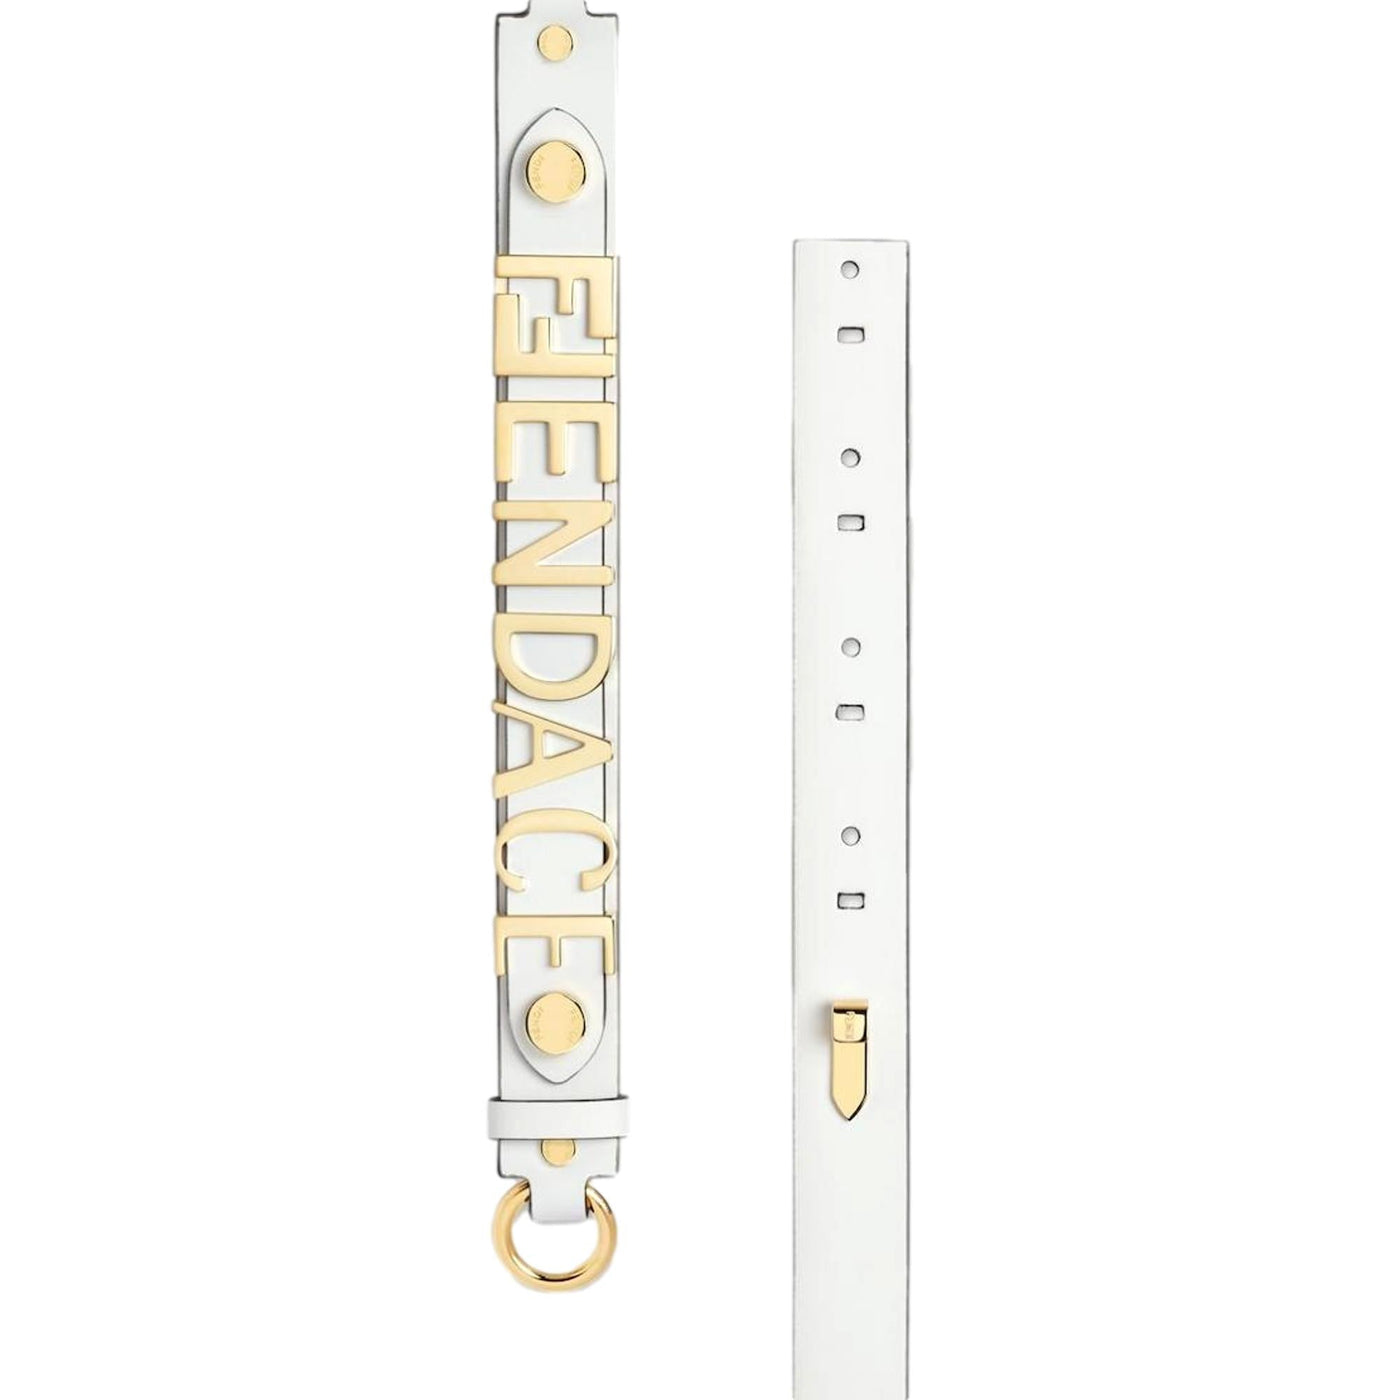 Fendi Fendace Gold Logo Ivory Leather Belt Size 85 - LUXURYMRKT